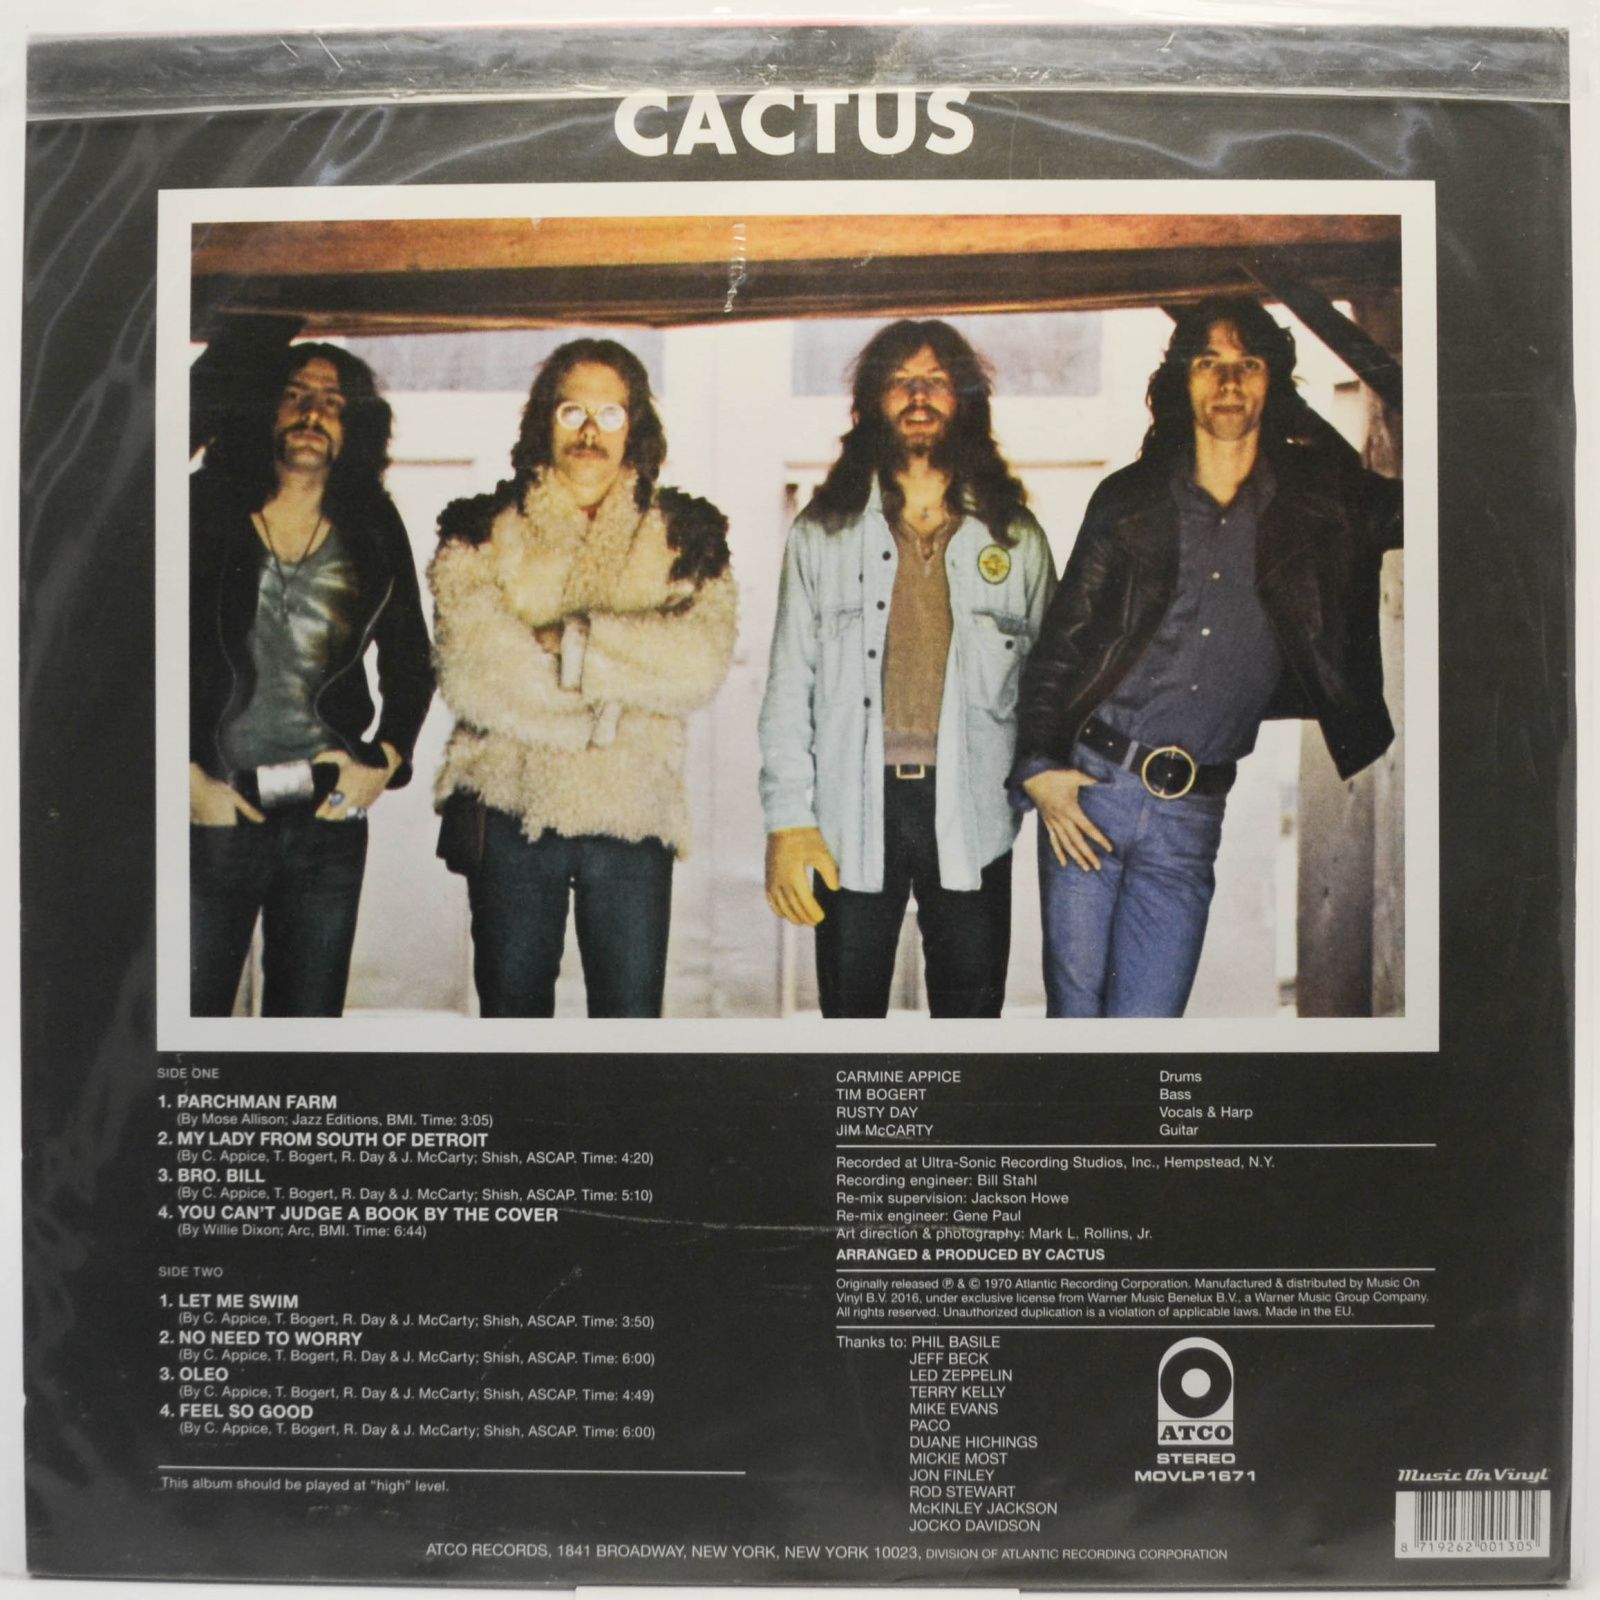 Cactus — Cactus, 1970